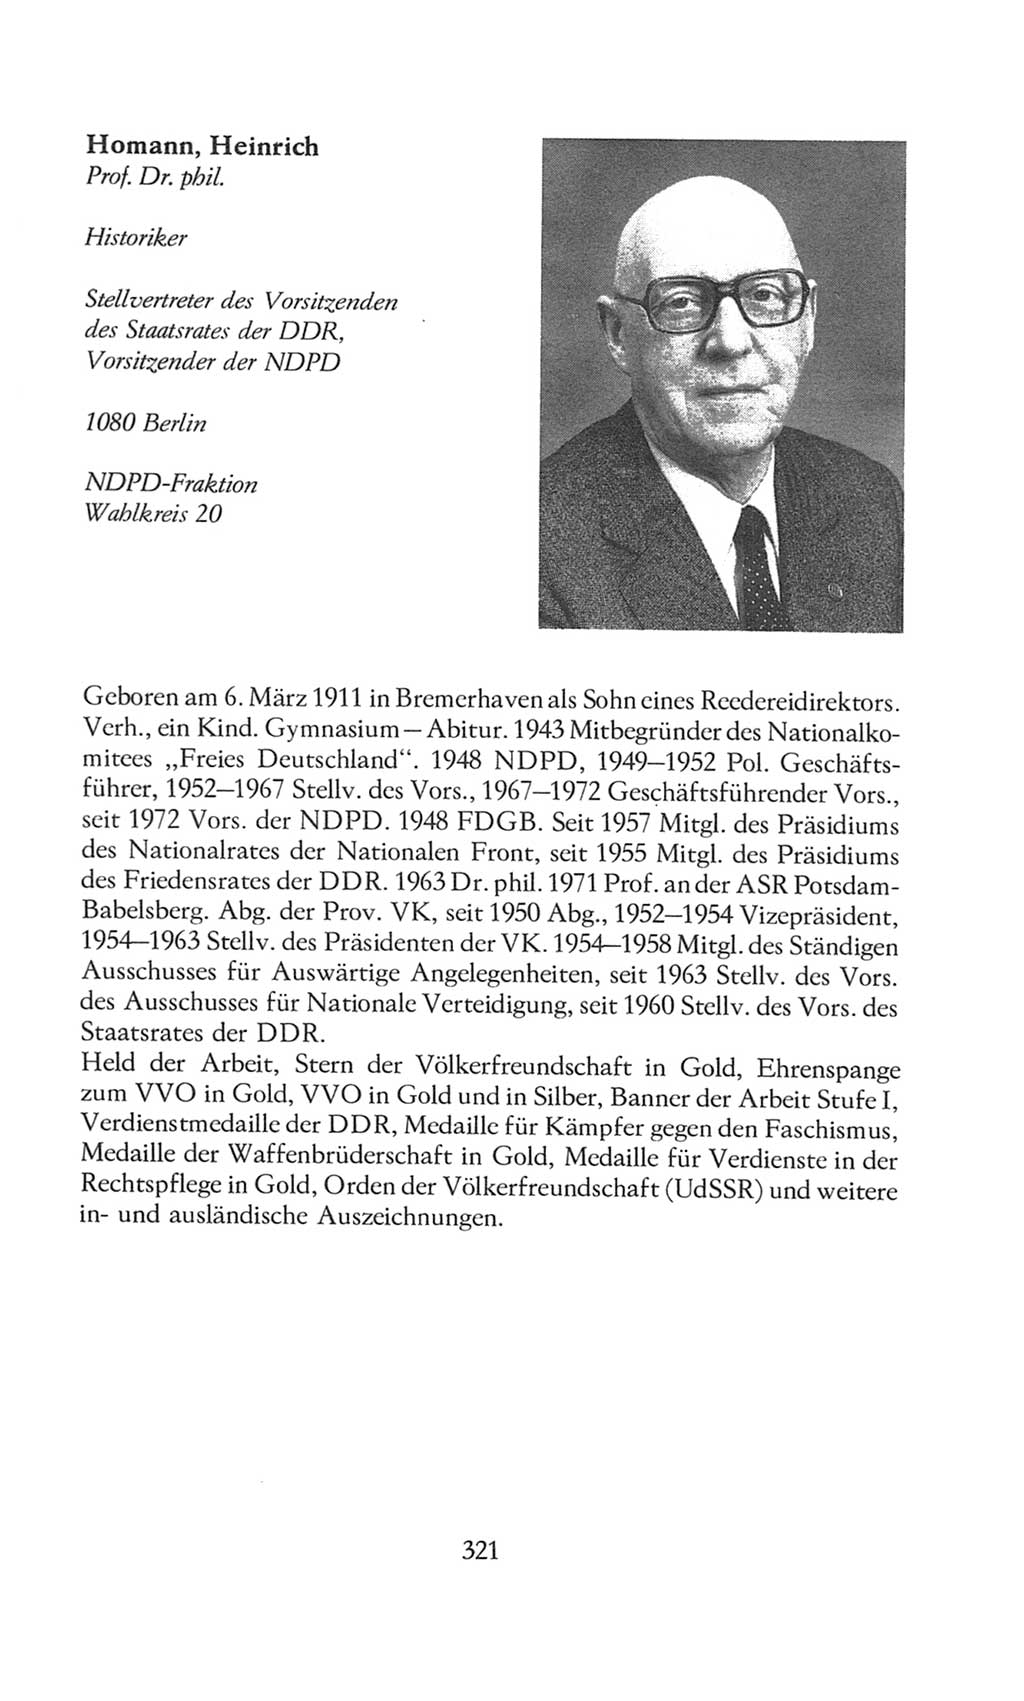 Volkskammer (VK) der Deutschen Demokratischen Republik (DDR), 8. Wahlperiode 1981-1986, Seite 321 (VK. DDR 8. WP. 1981-1986, S. 321)